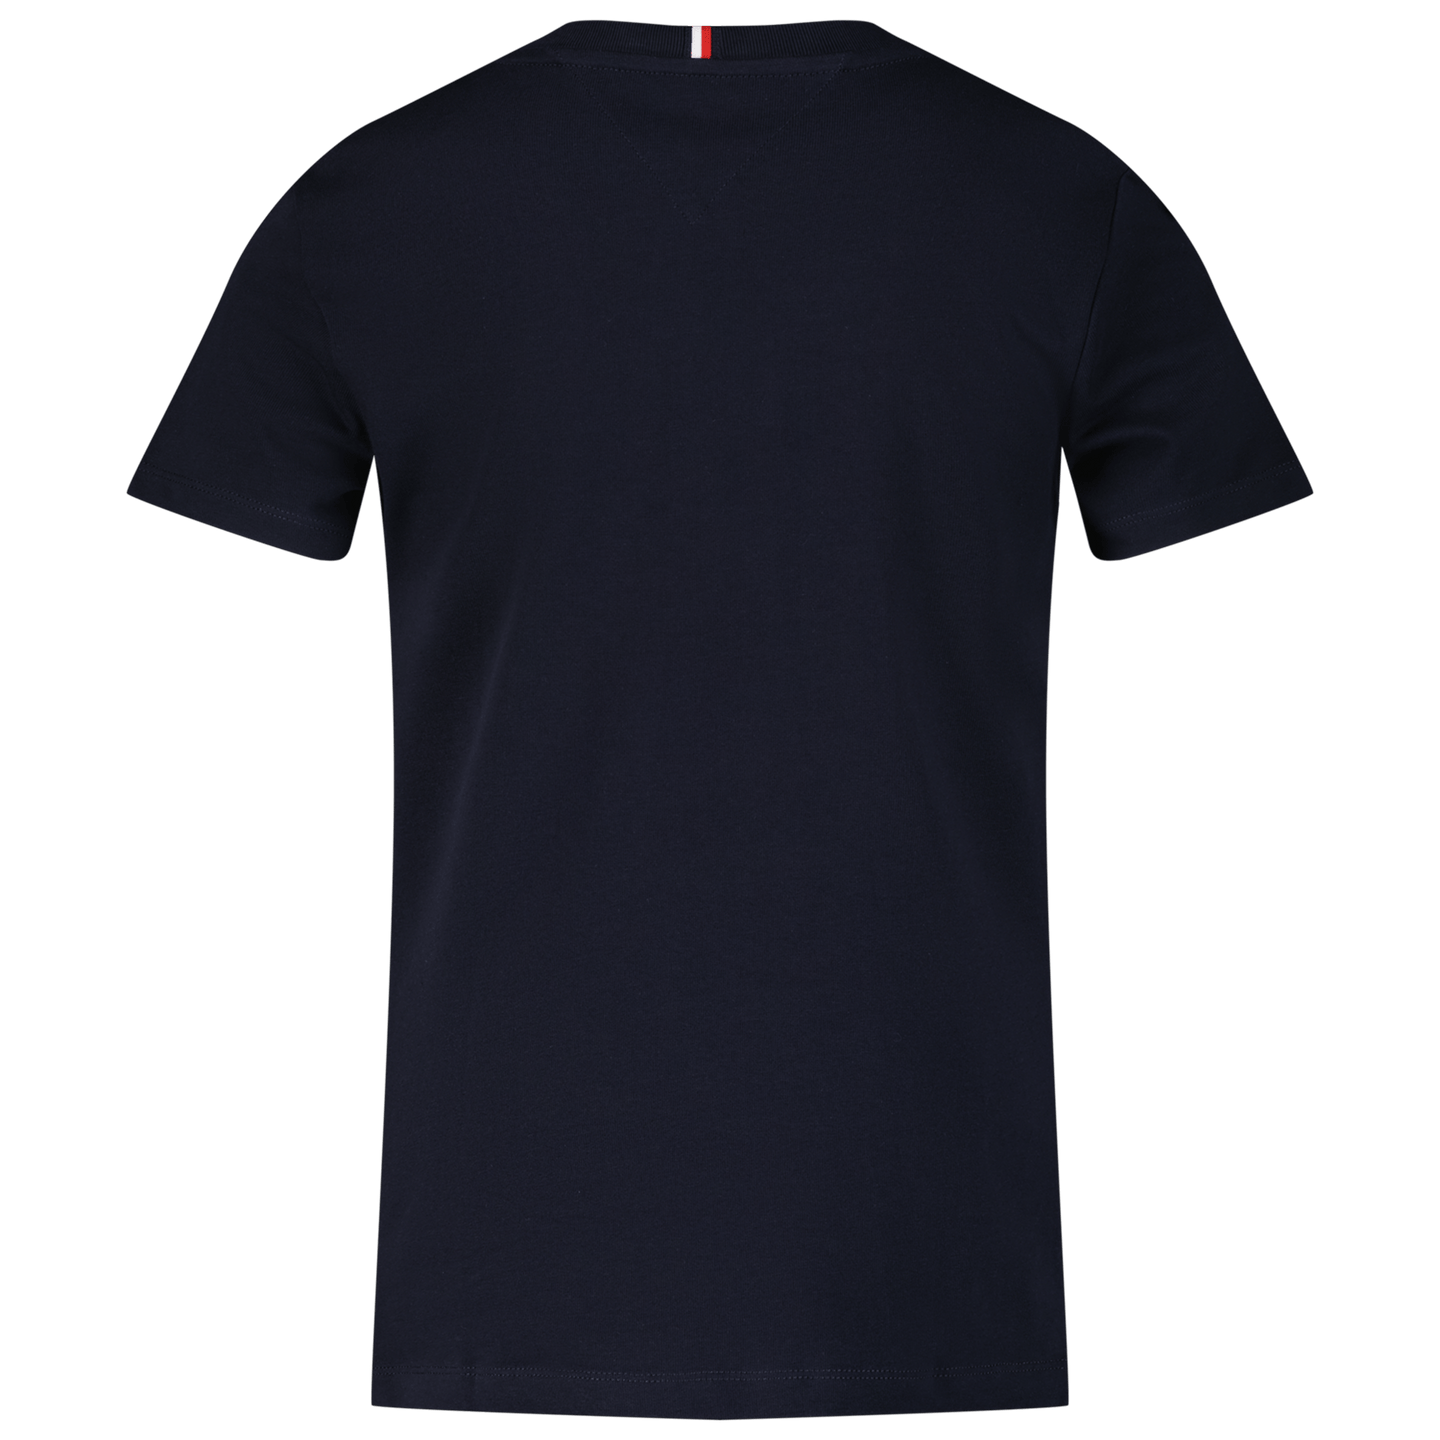 Tommy Hilfiger Kinder Unisex T-Shirt Navy 4Y